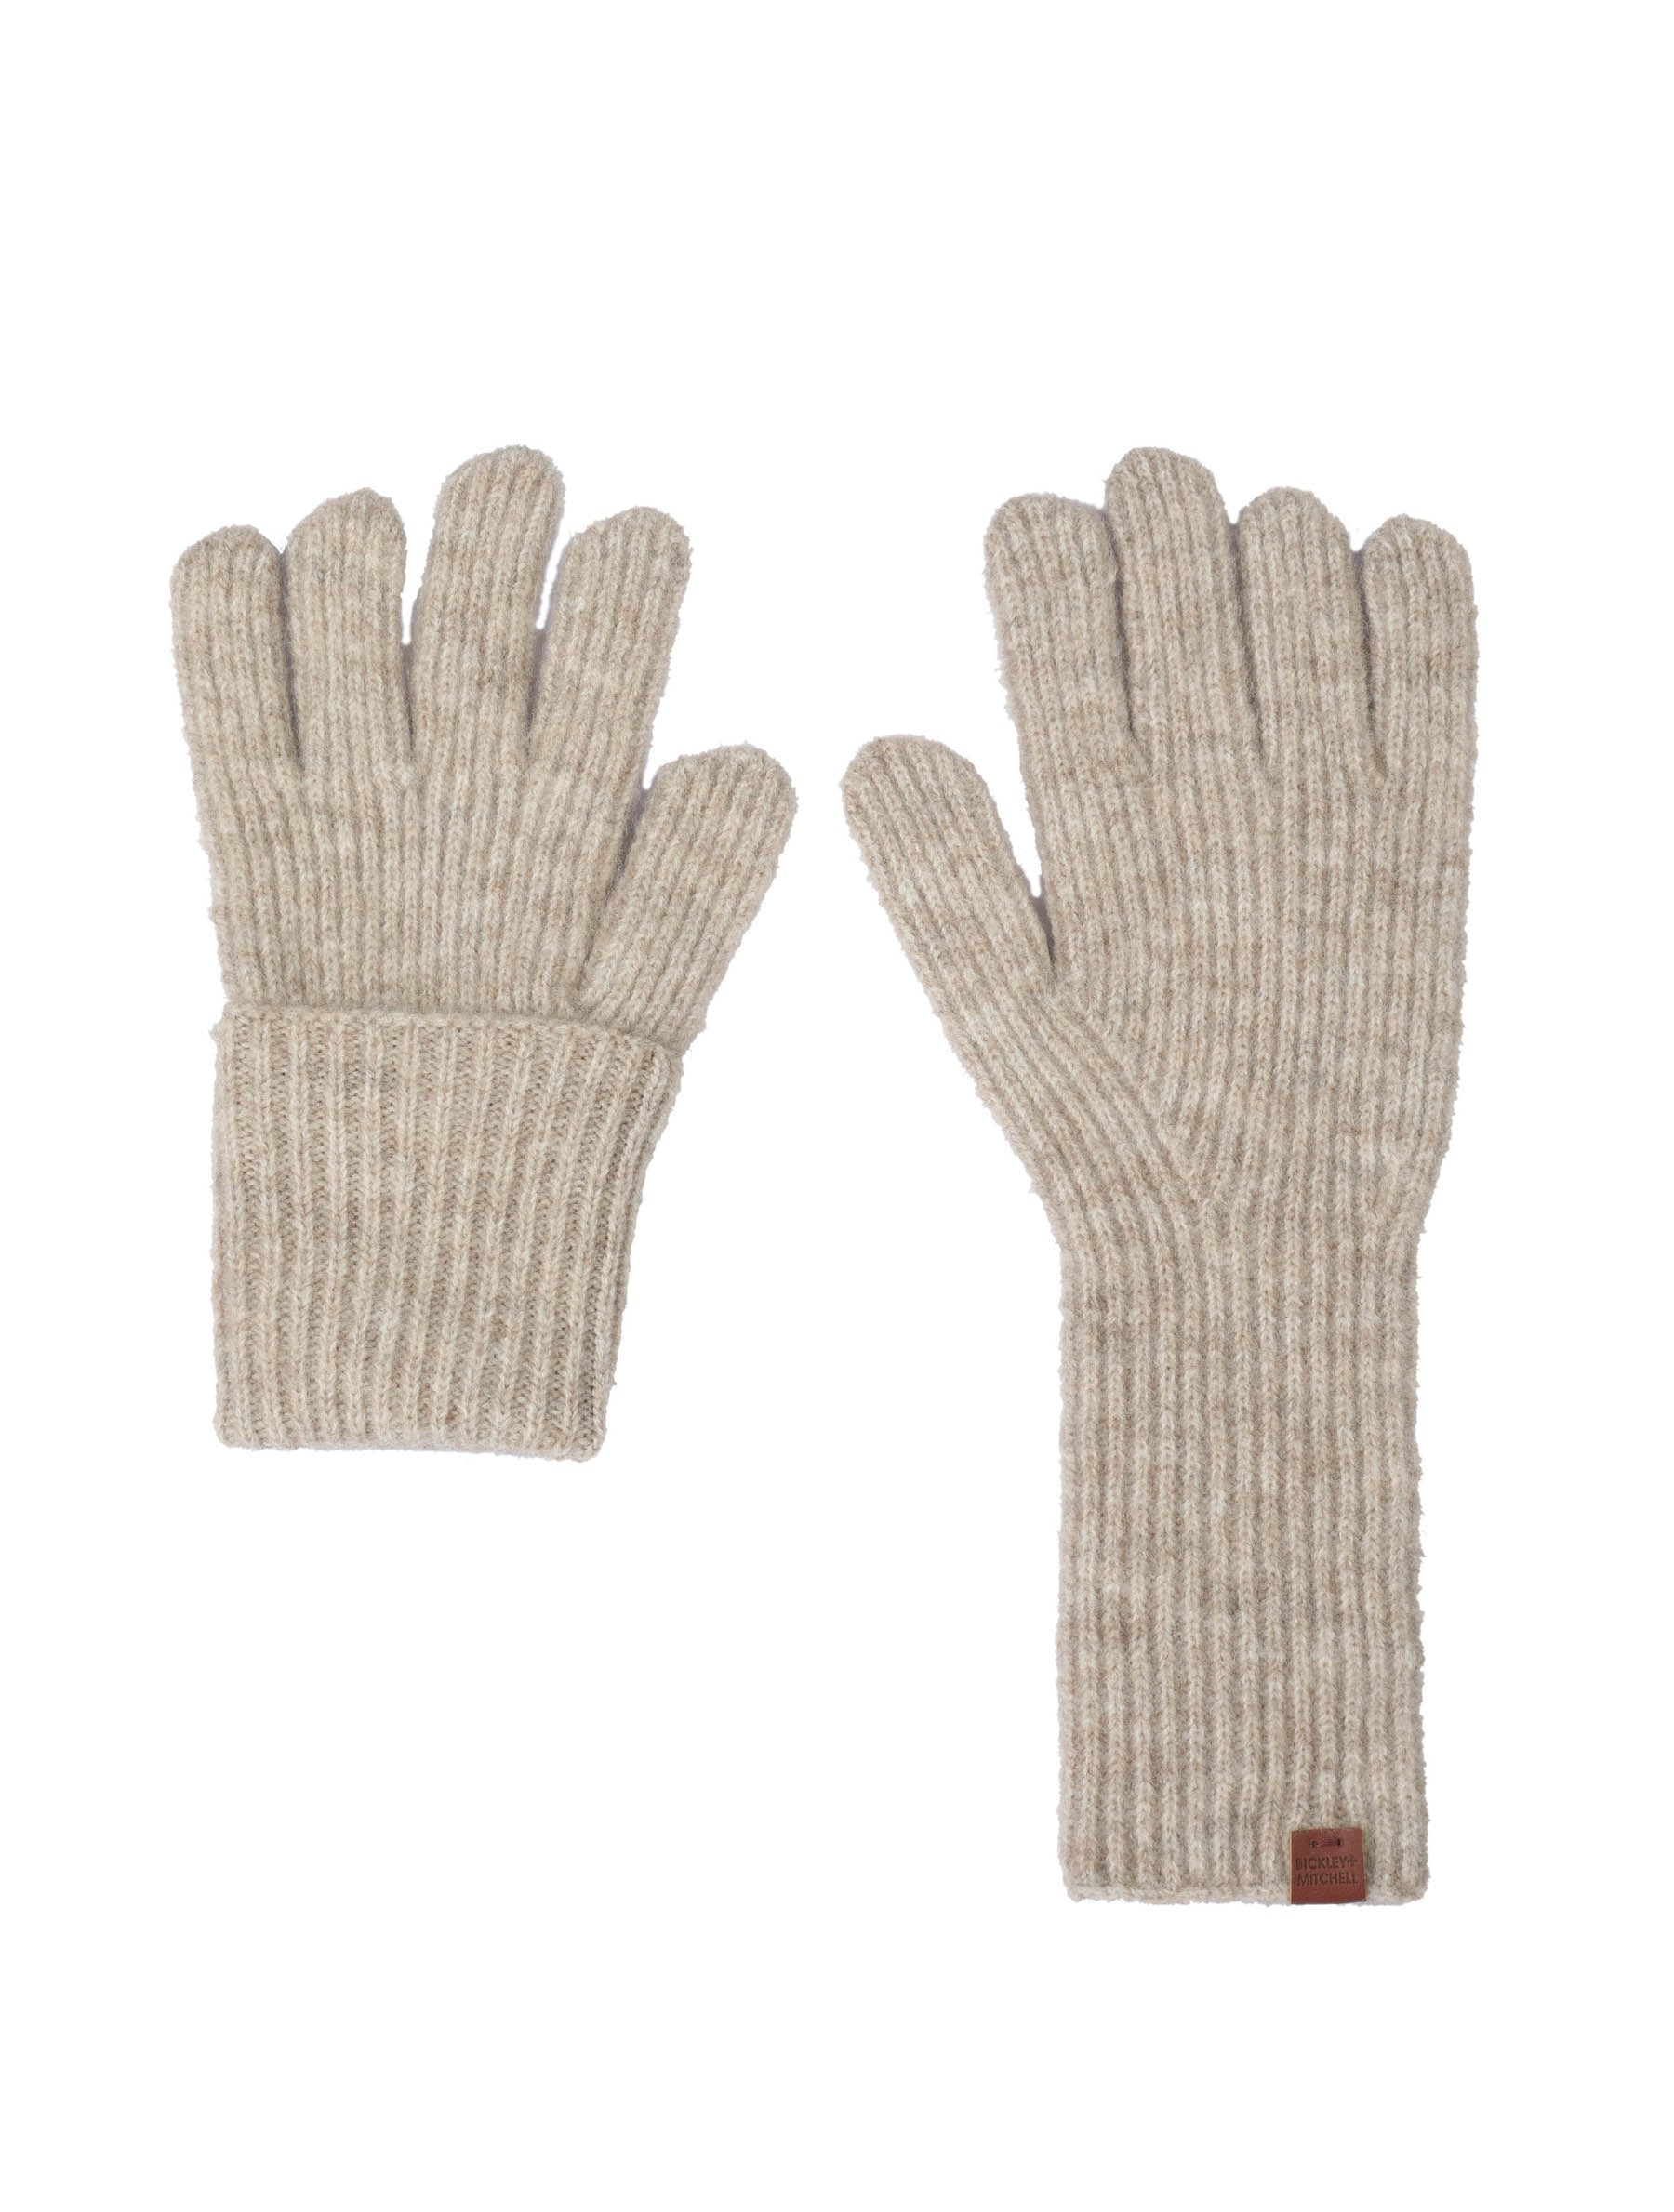 Soft rib knitted long model gloves